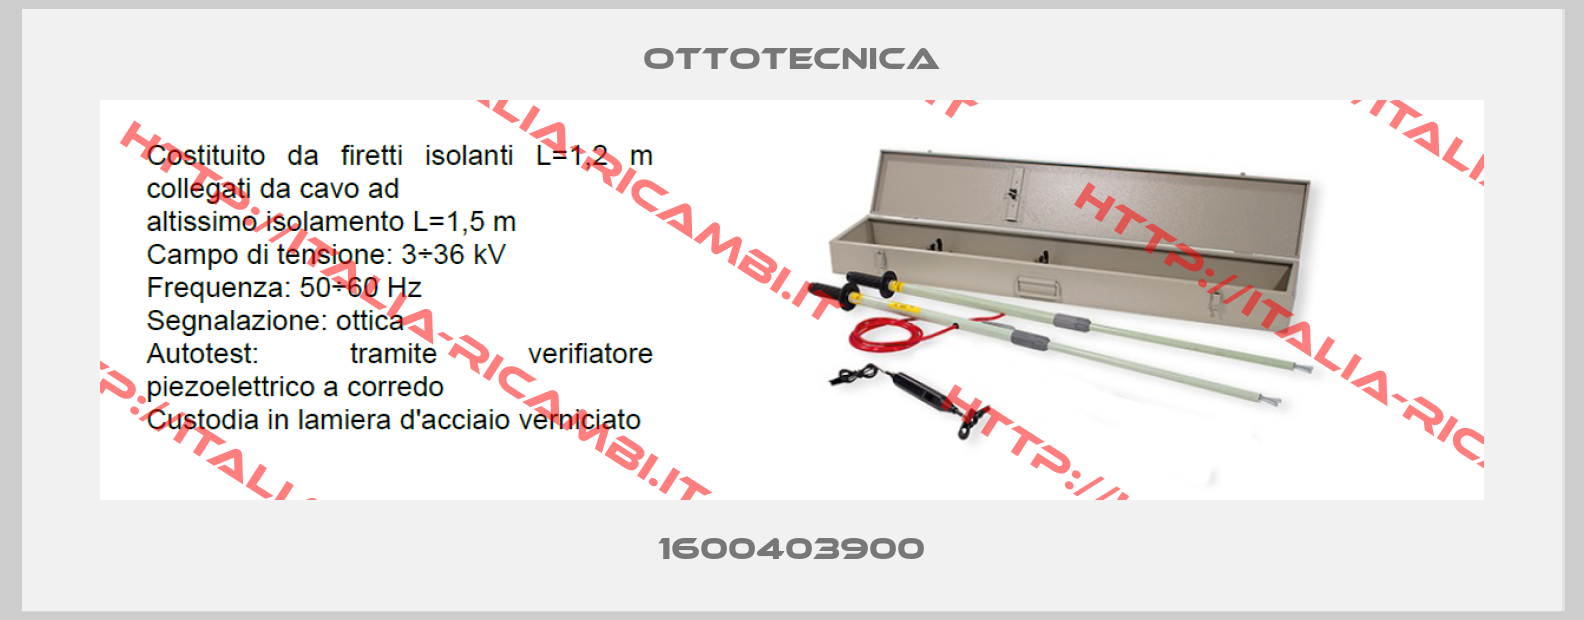 Ottotecnica-1600403900